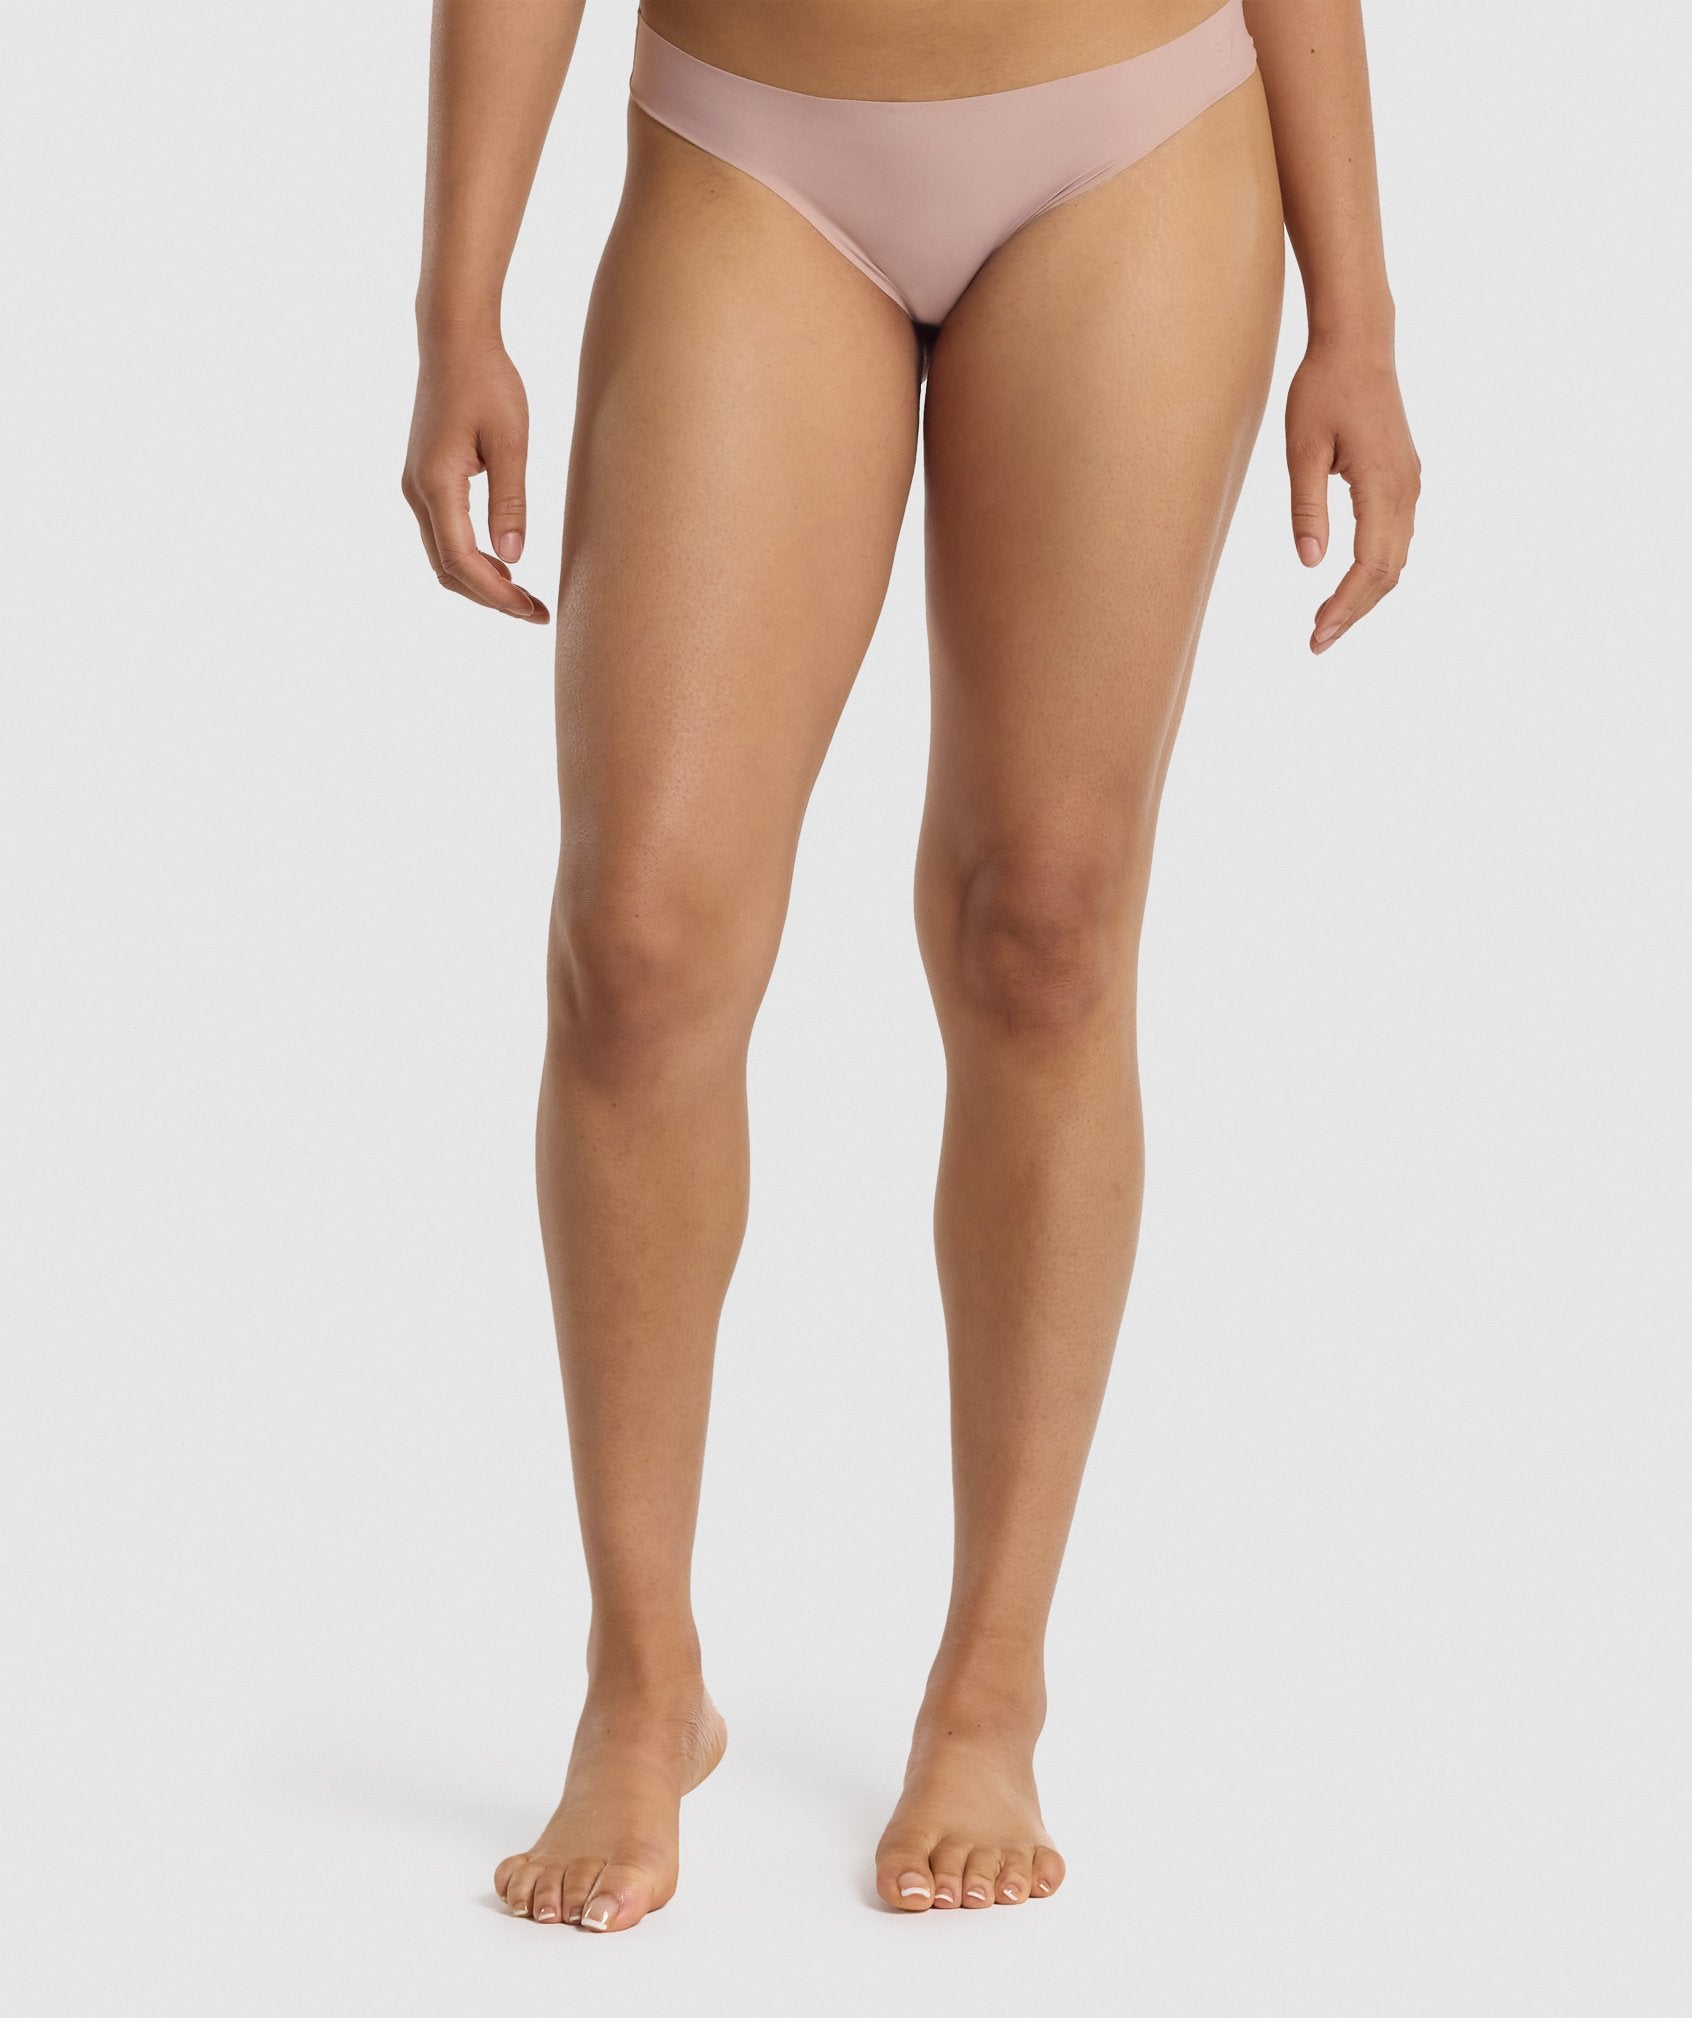 No VPL - Women Training Nude Thong Underwear – SILVERWIND